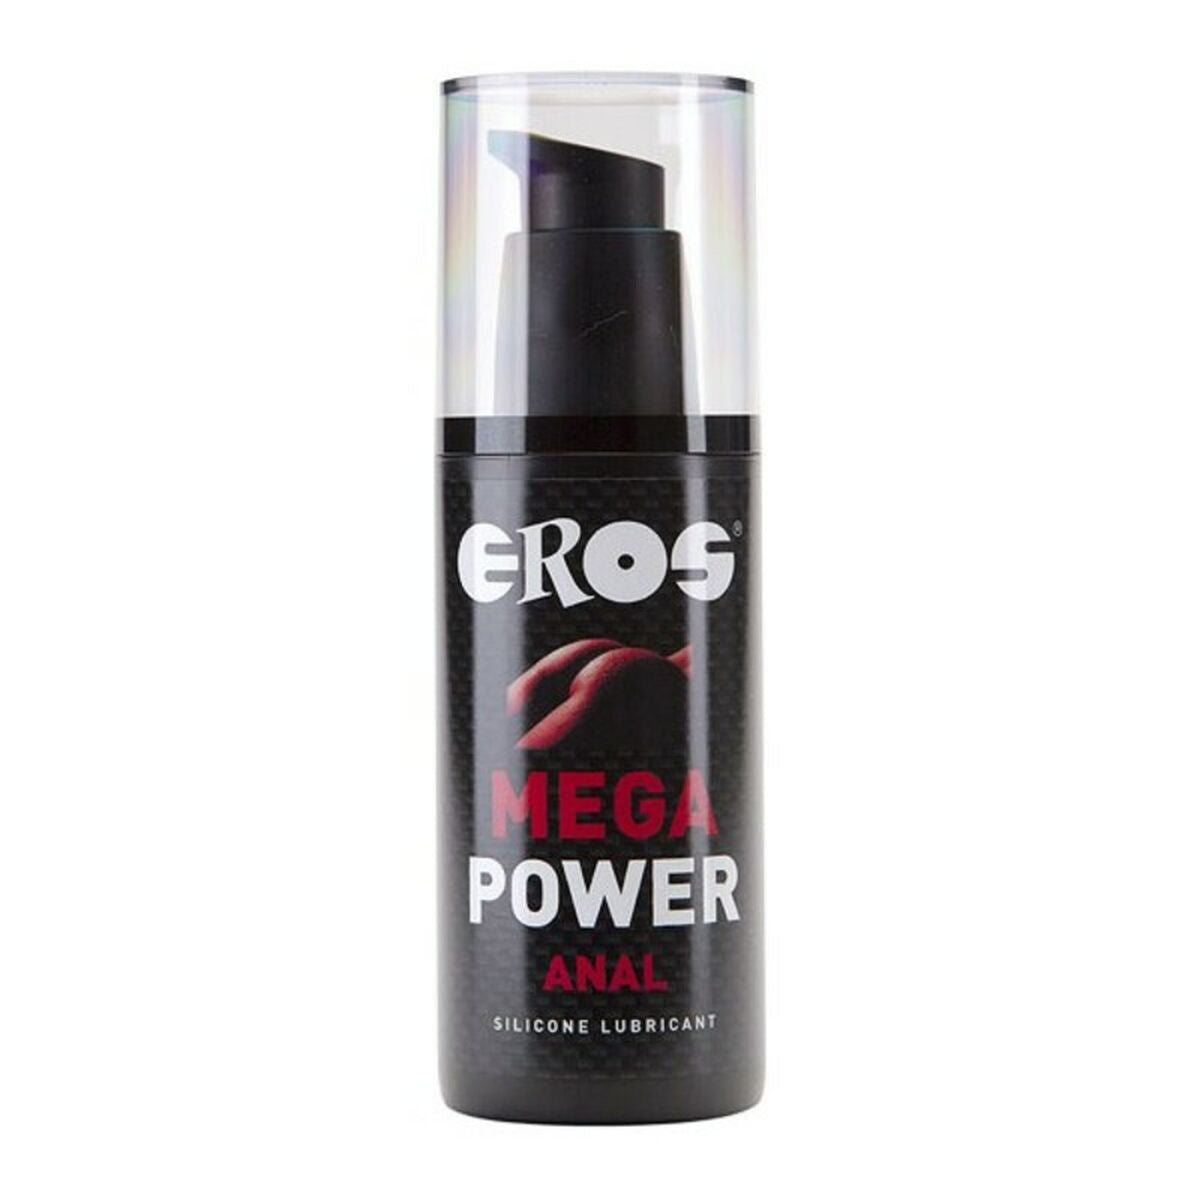 Kaufe Gleitmittel auf Silikonbasis Eros Mega Power Anal 125 ml bei AWK Flagship um € 31.00